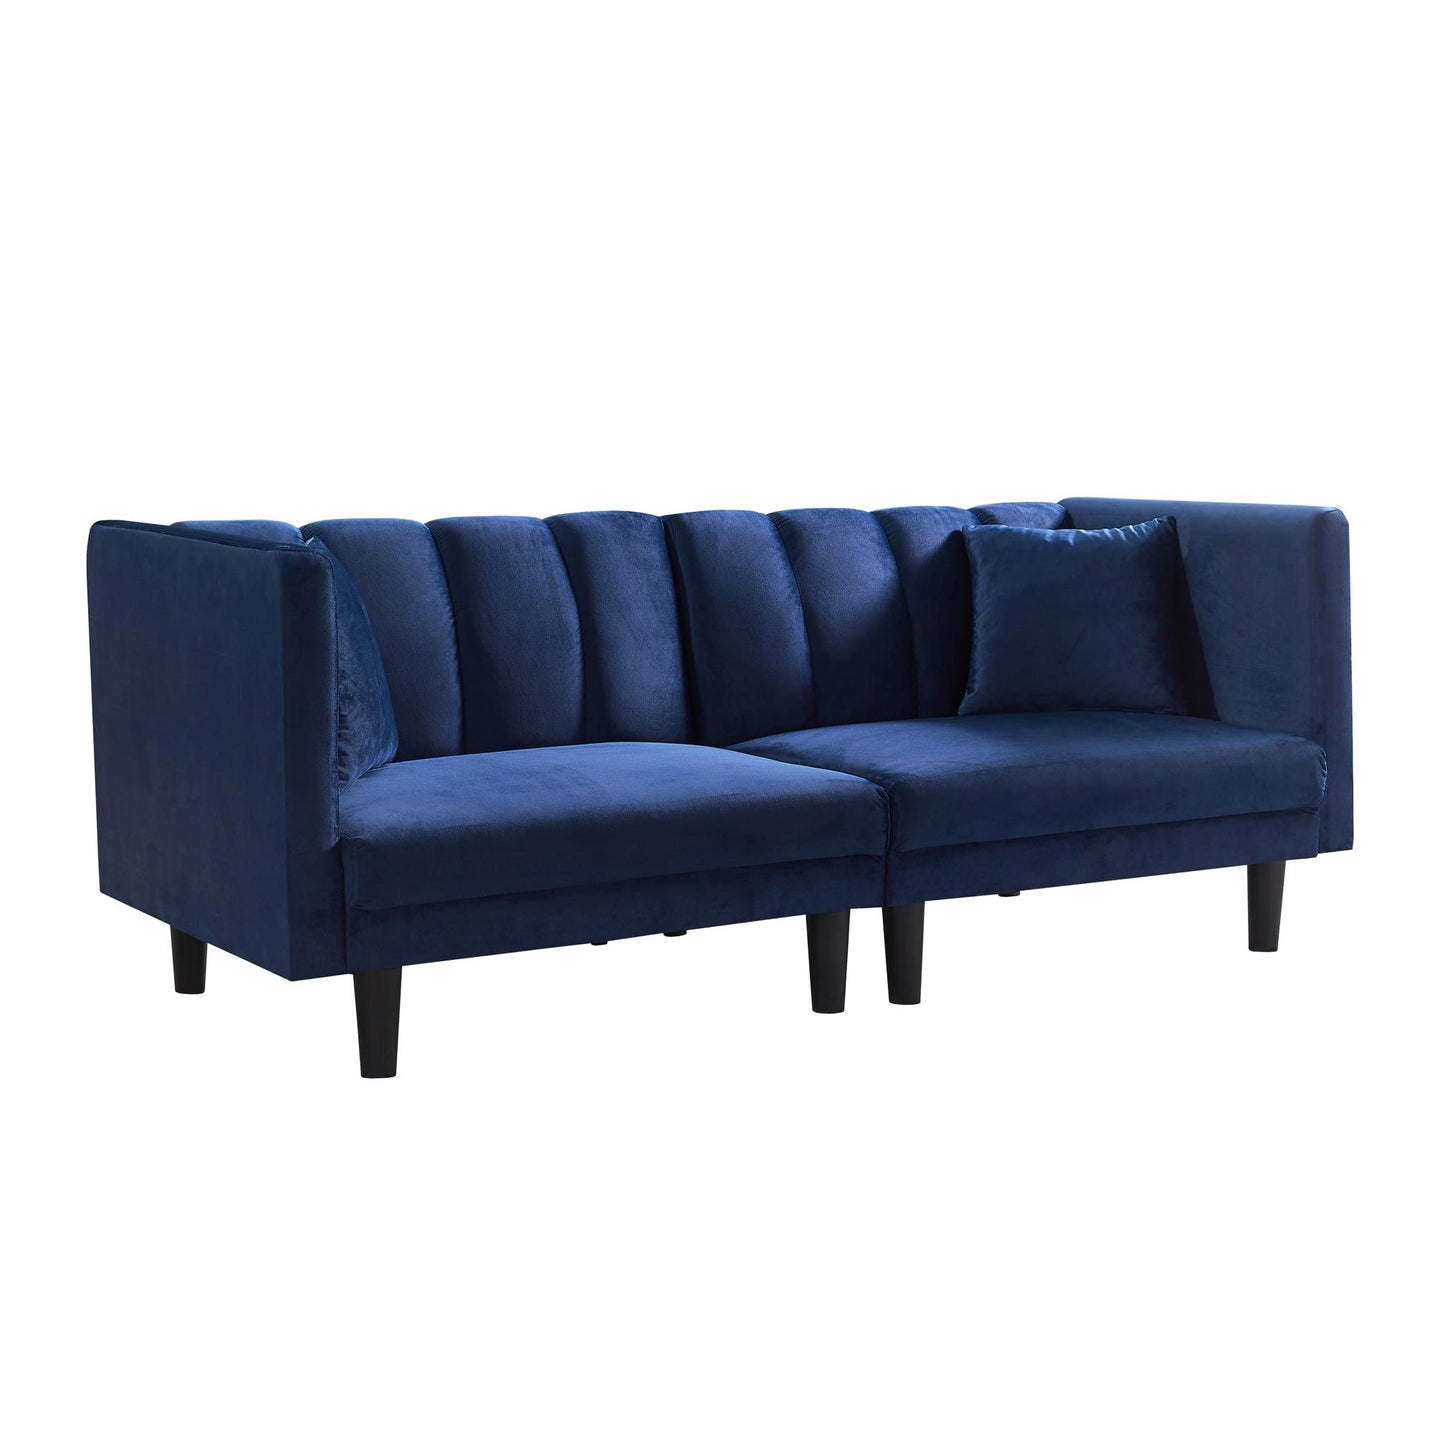 70.8” Futon Sofa bed（plastic legs）